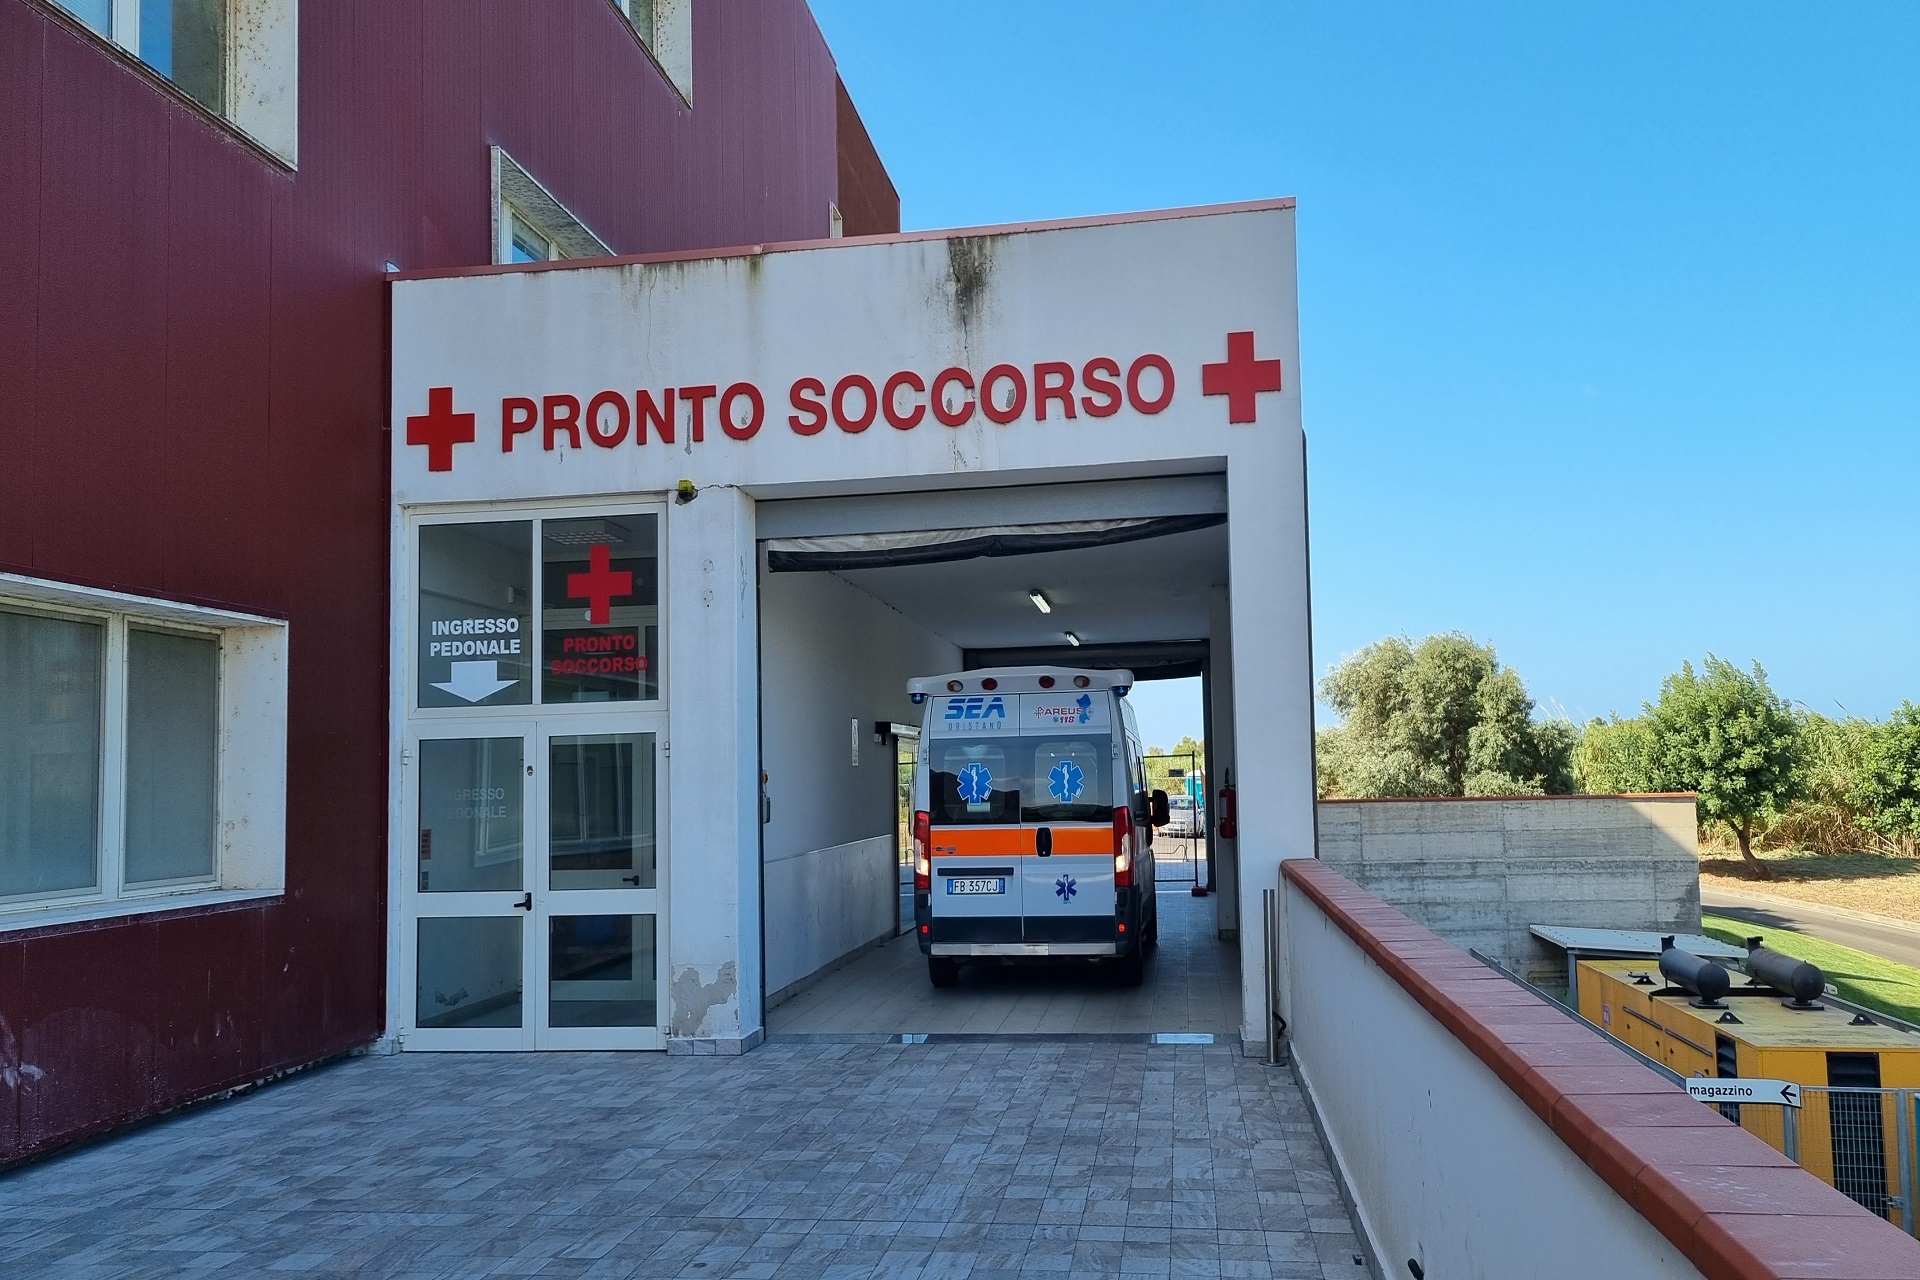 La Asl di Oristano cerca nuovi dirigenti medici per i pronto soccorso